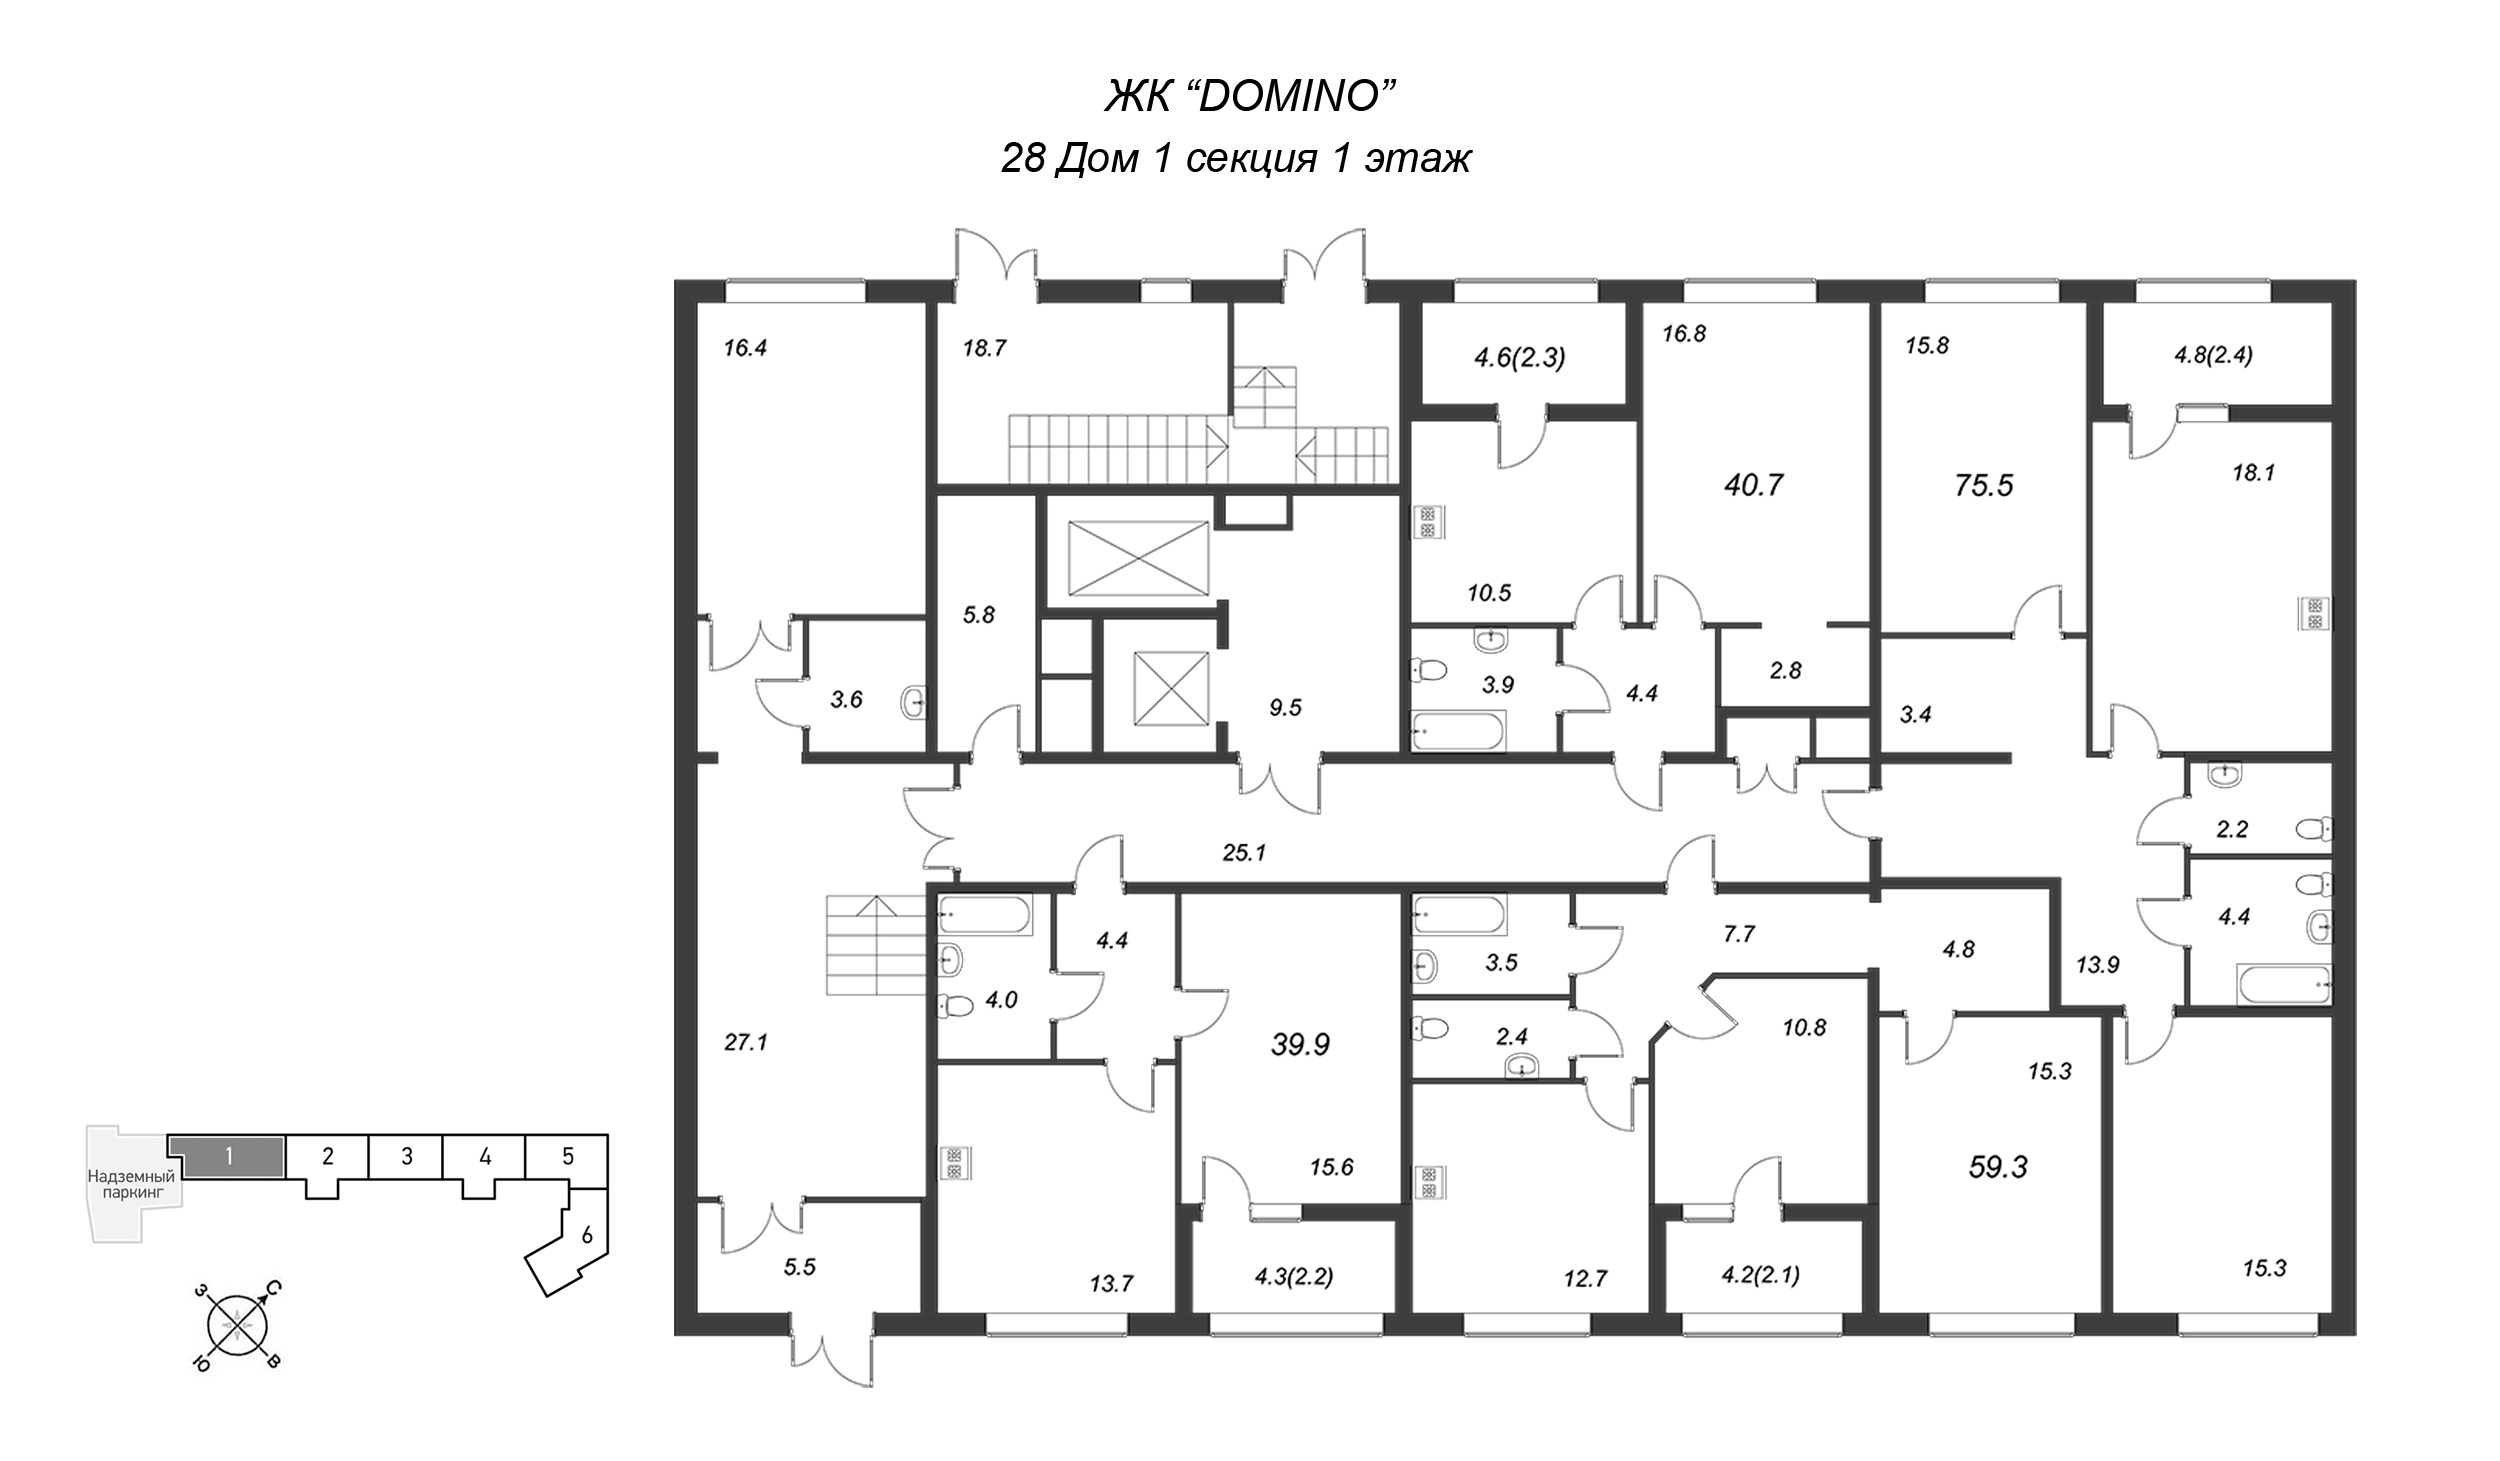 2-комнатная квартира, 75.6 м² в ЖК "Domino" - планировка этажа